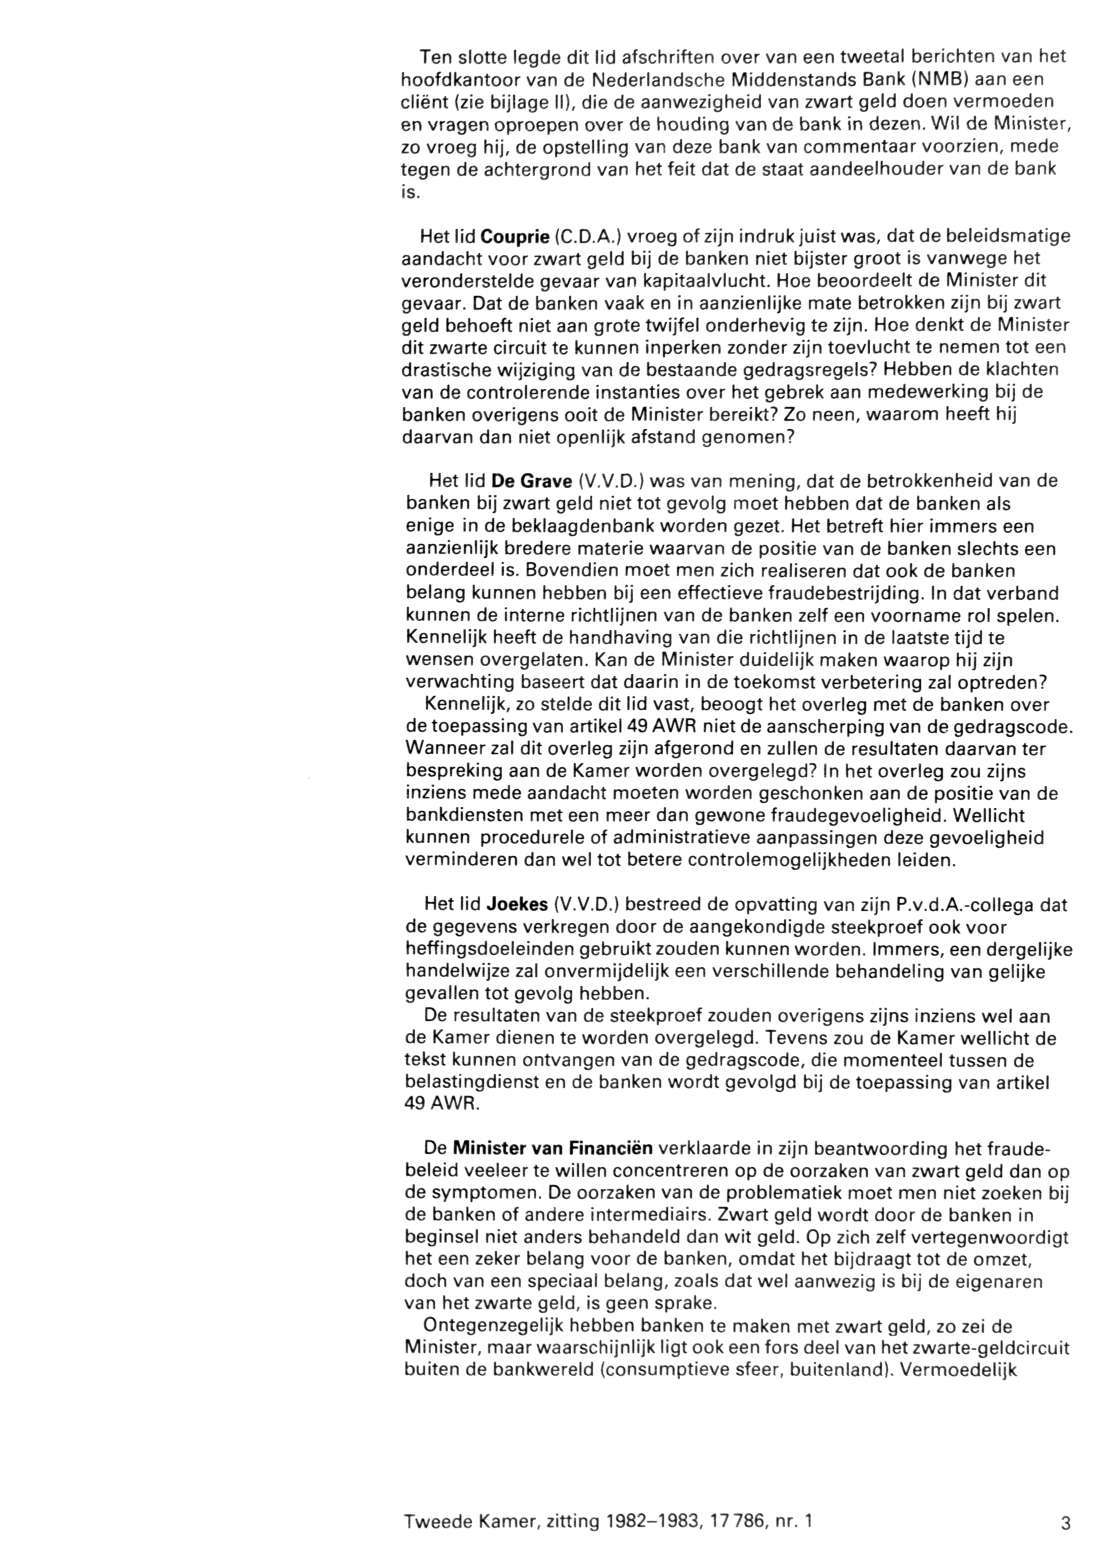 Ten slotte legde dit lid afschriften over van een tweetal berichten van het hoofdkantoor van de Nederlandsche Middenstands Bank (NMB) aan een cliënt (zie bijlage II), die de aanwezigheid van zwart